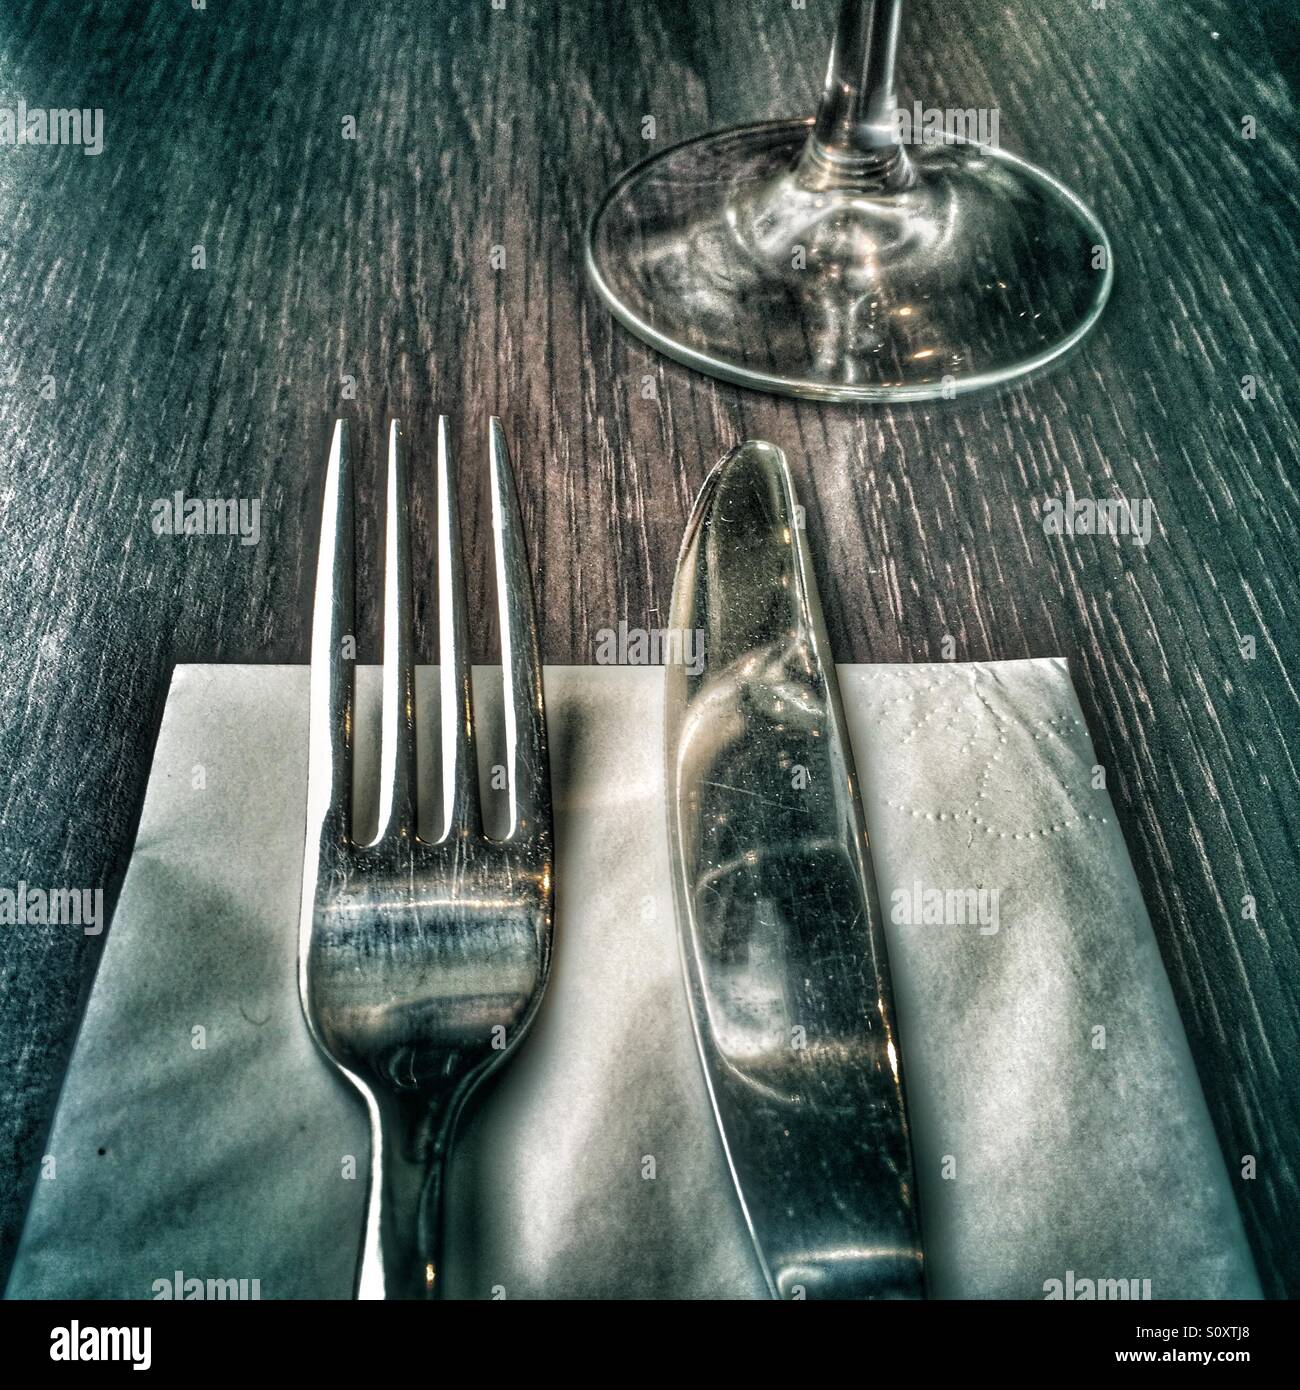 Messer, Gabel, Serviette und Glas Stockfotografie - Alamy